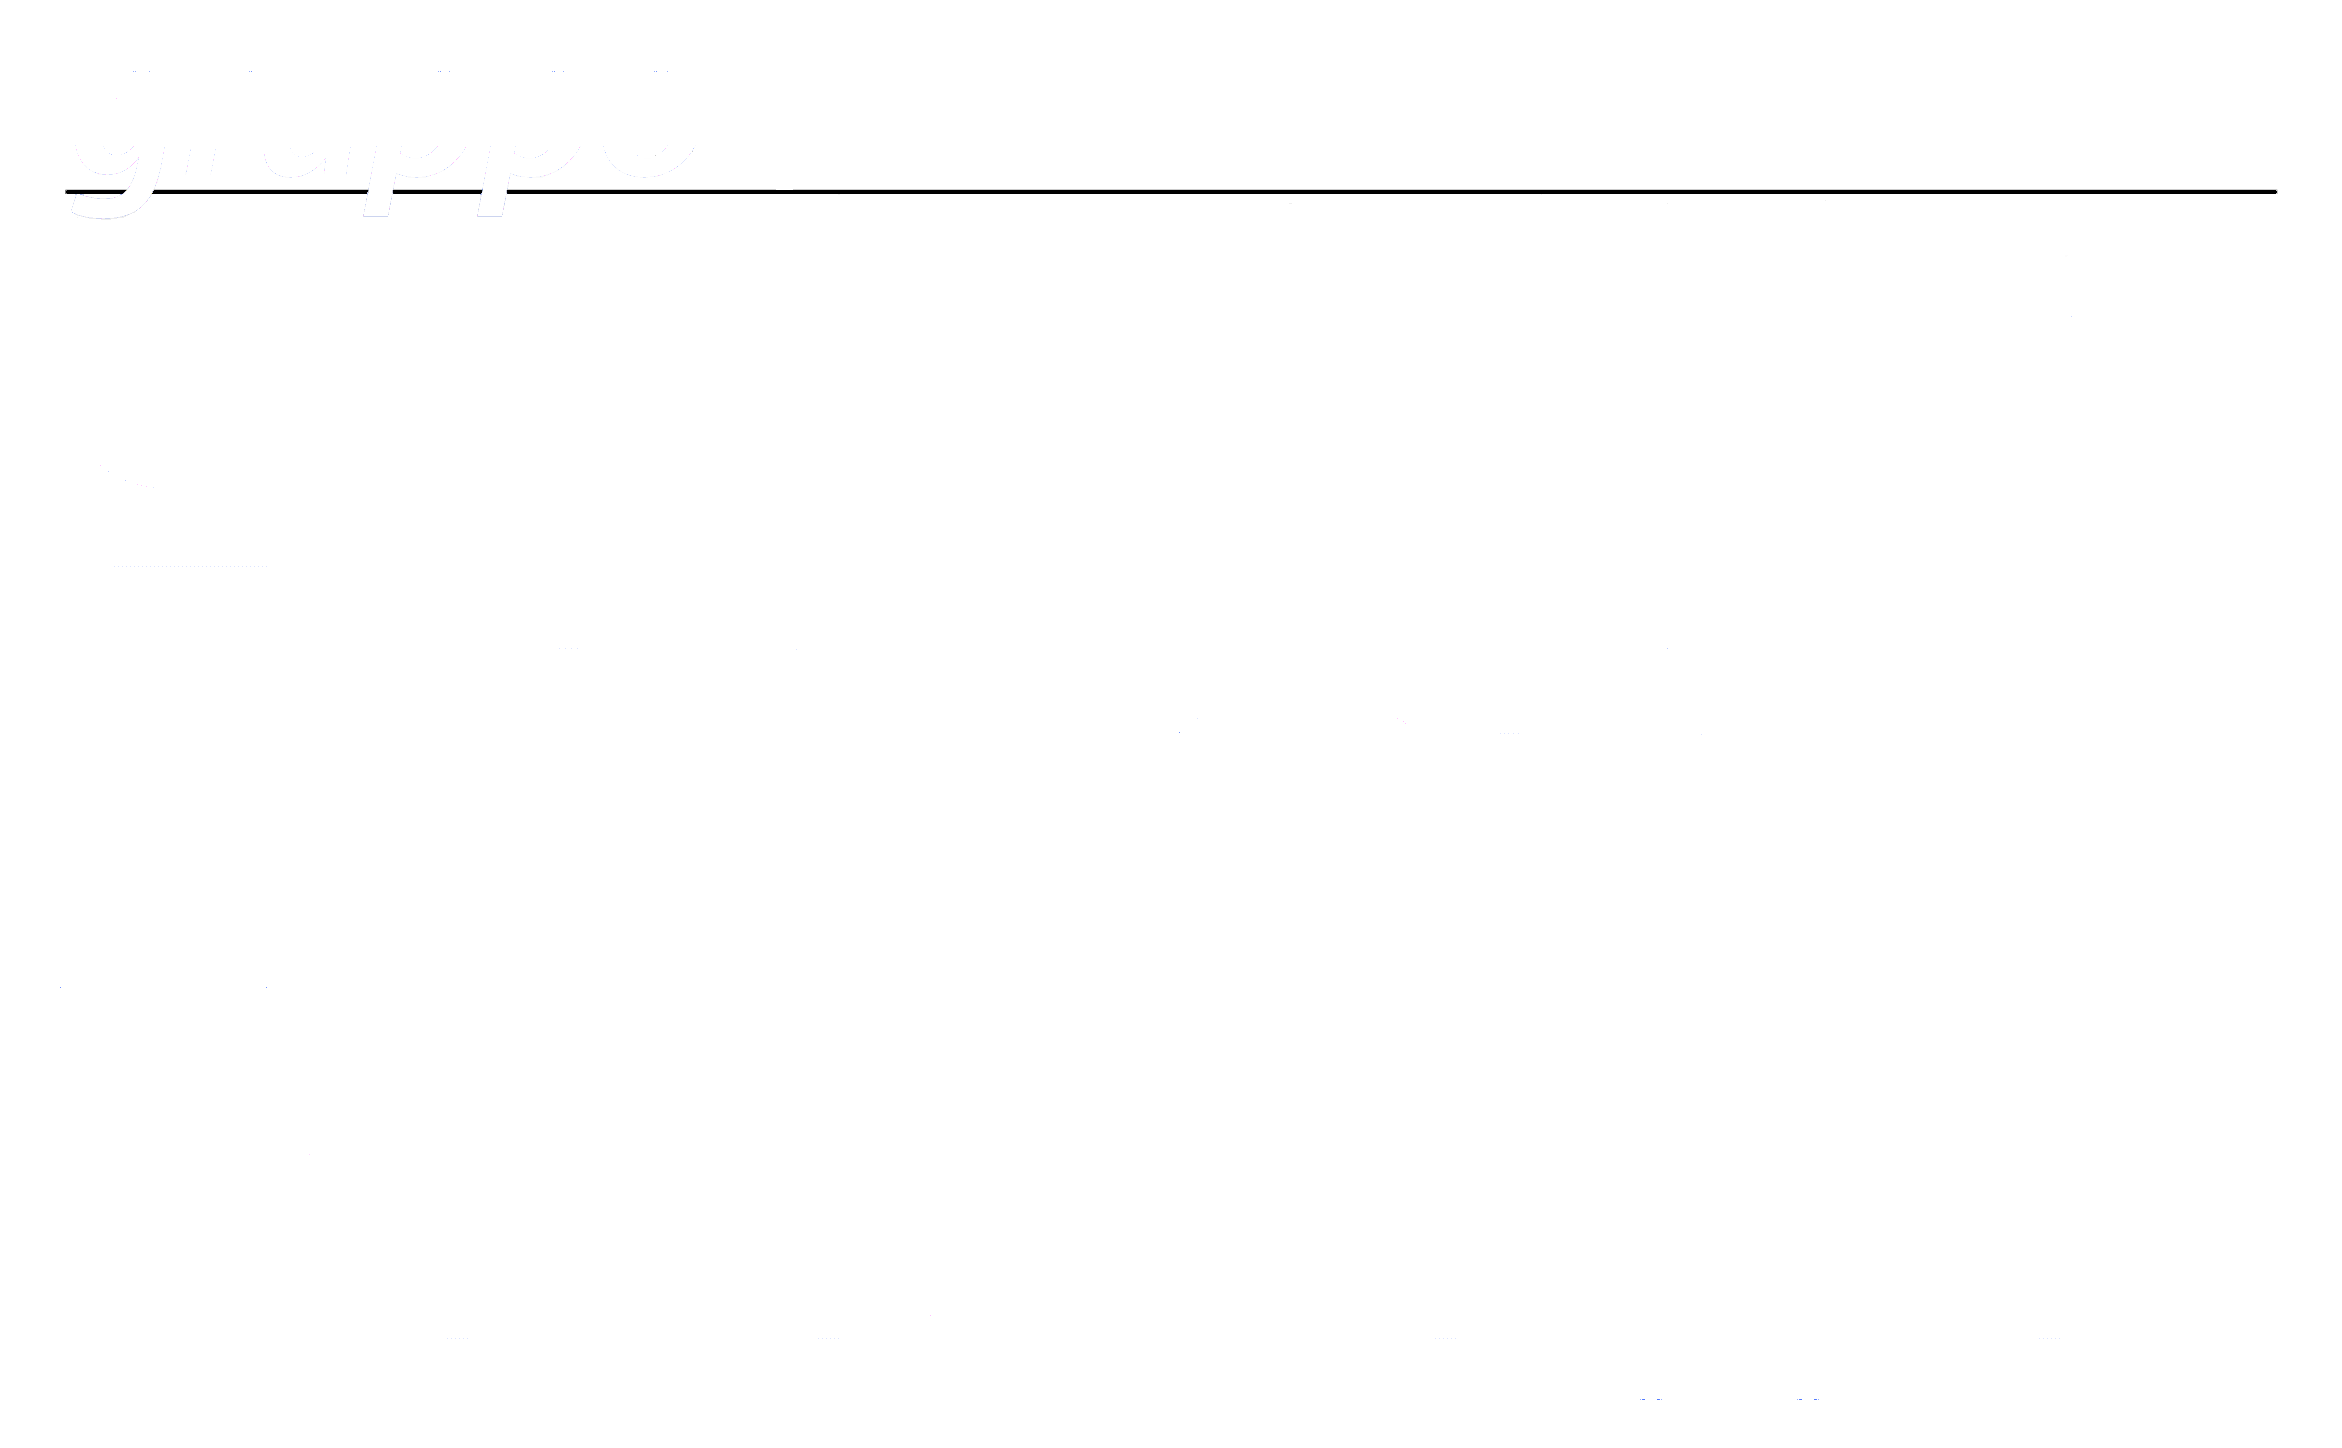 ISED Logo